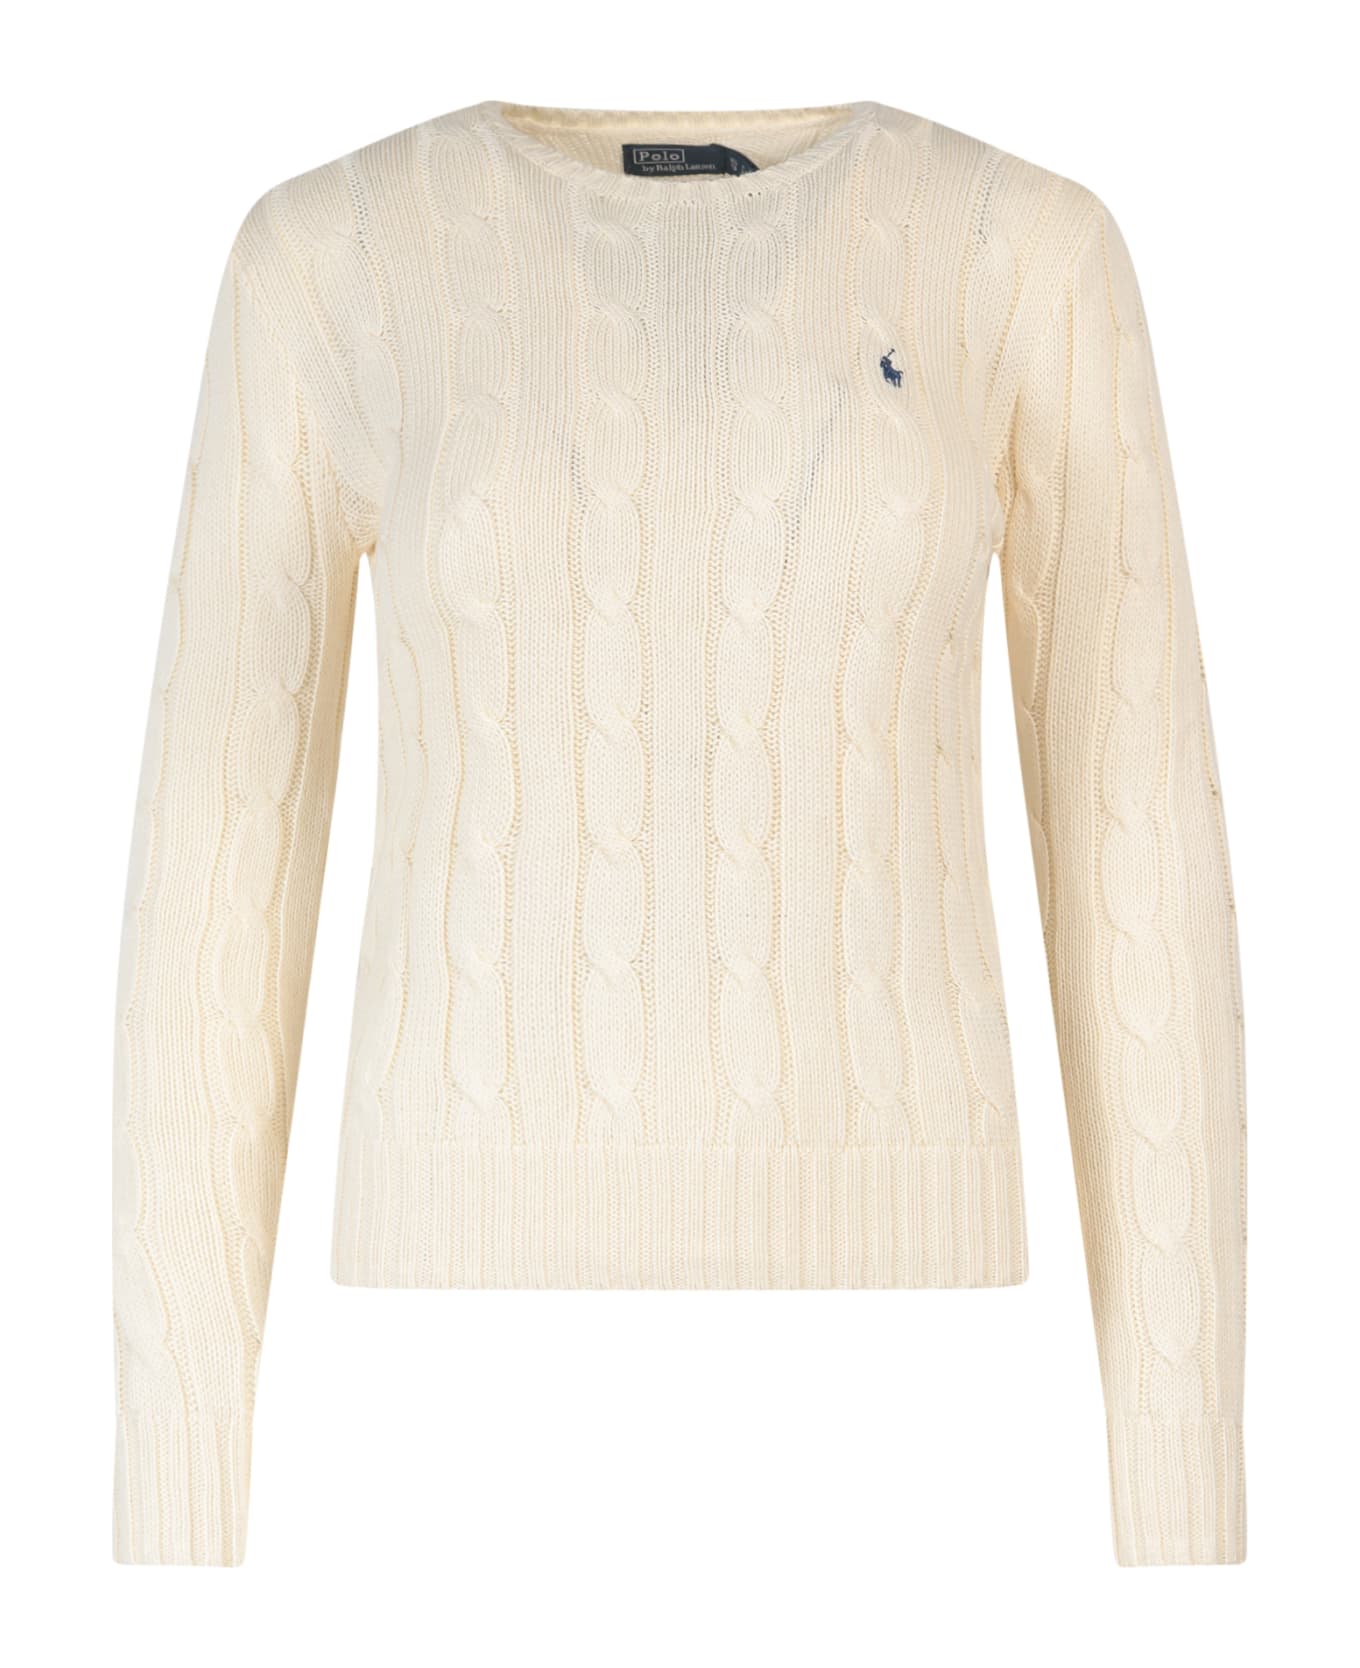 Ralph Lauren Sweater - Cream